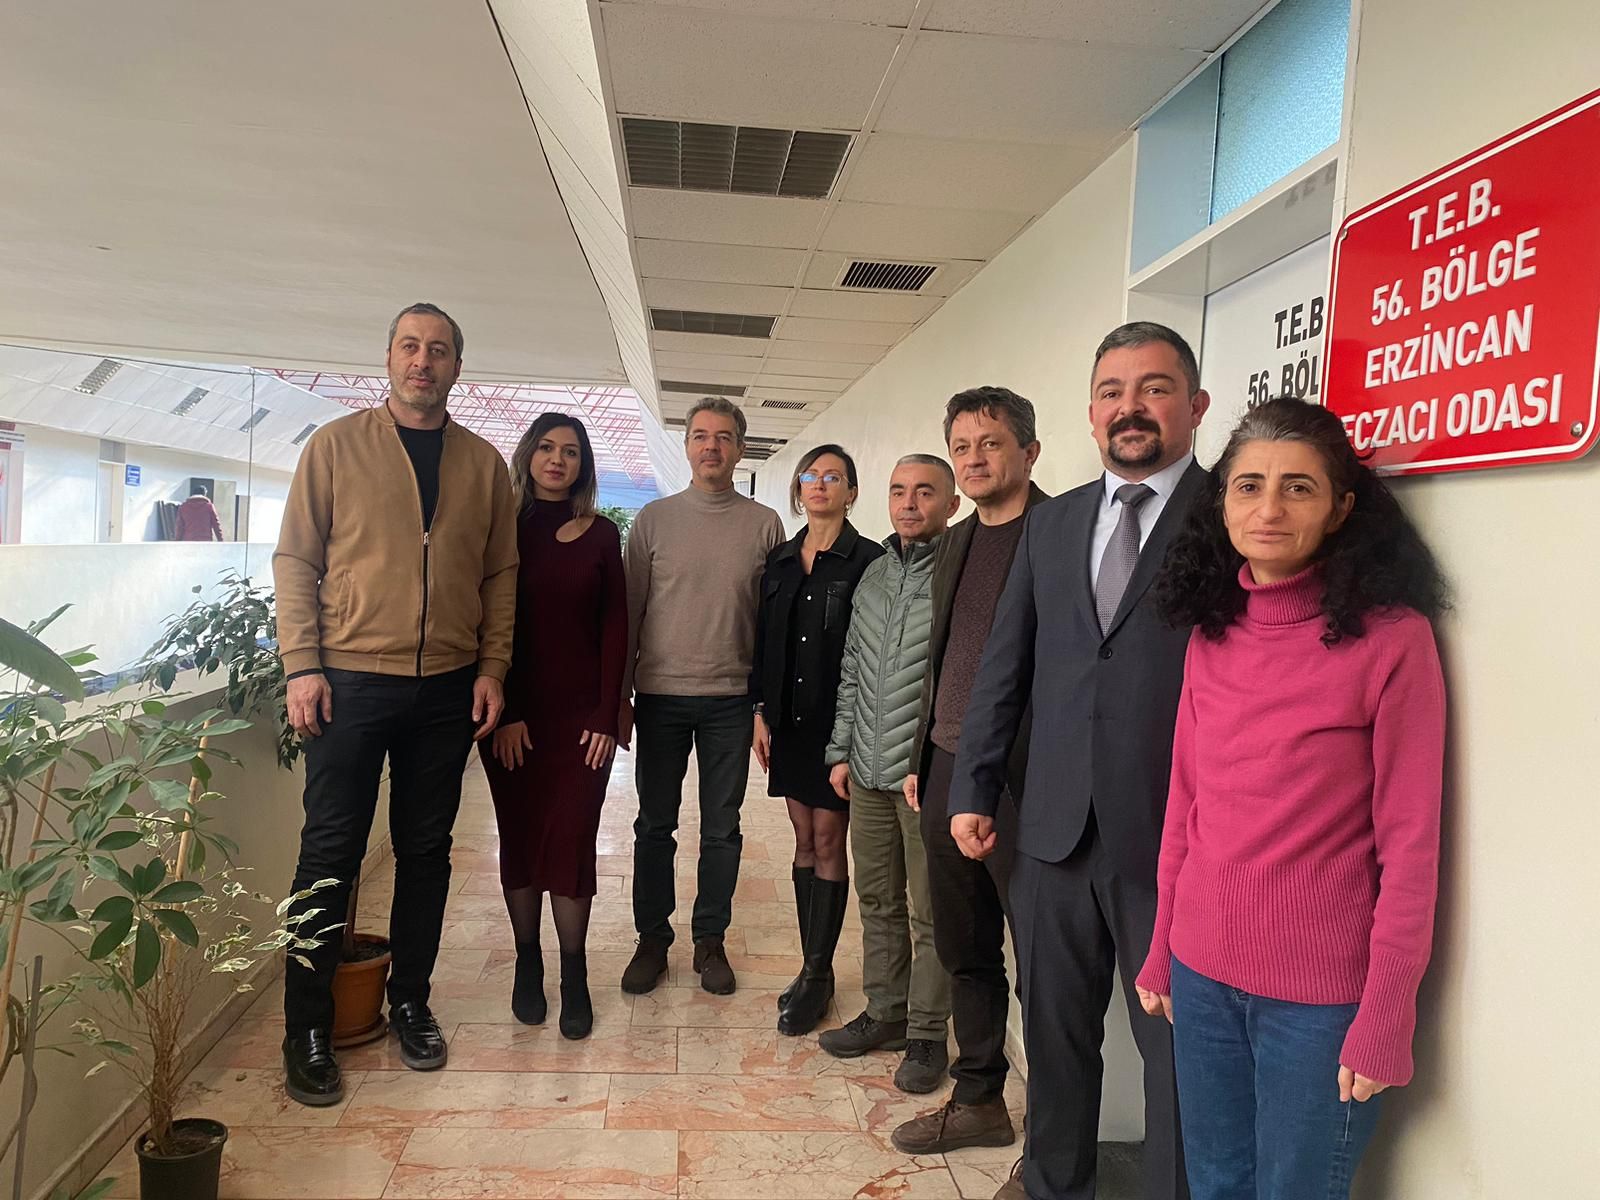 ‘Erzincan’daki sağlık hizmetlerinin geliştirilmesine katkı sağlayacağız’